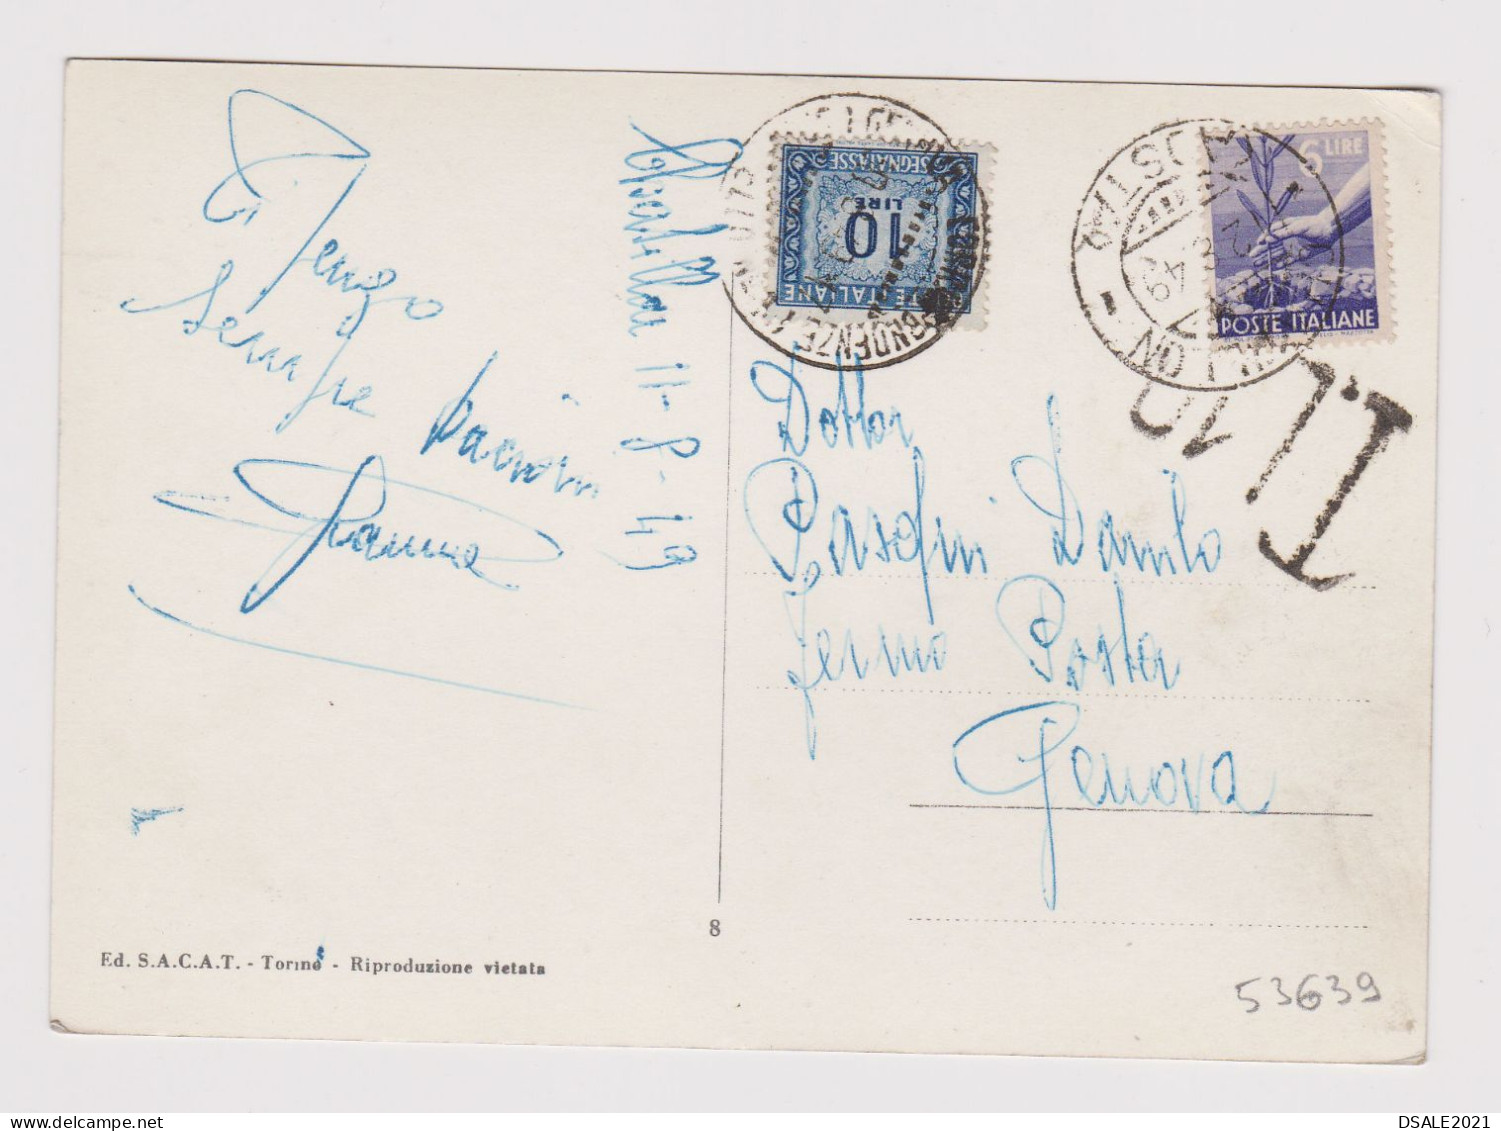 ITALY 1949 Pc W/6Lire Stamp AOSTA To GENOVA Postage Due 10Lire, Postcard St. VINCENT M.575 PIAZZALE DELLA FONTE /53639 - 1946-60: Marcophilia